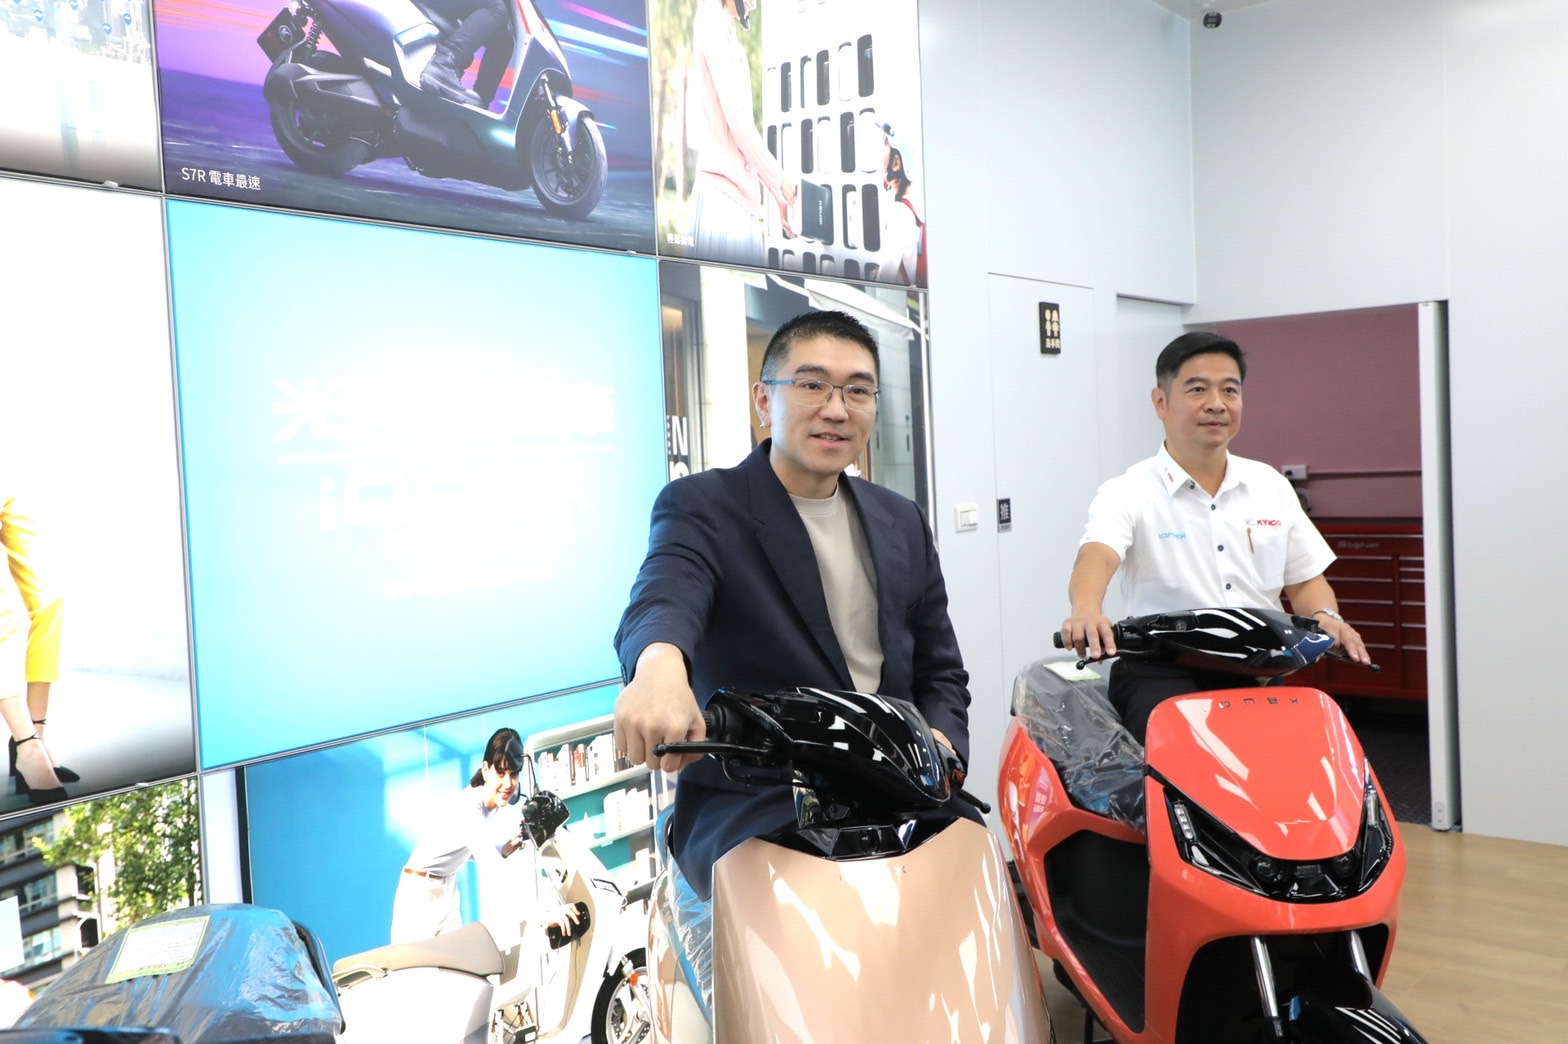 市長謝國樑與Ionex光捷副總經理謝俊弘一同推廣電動機車環保政策